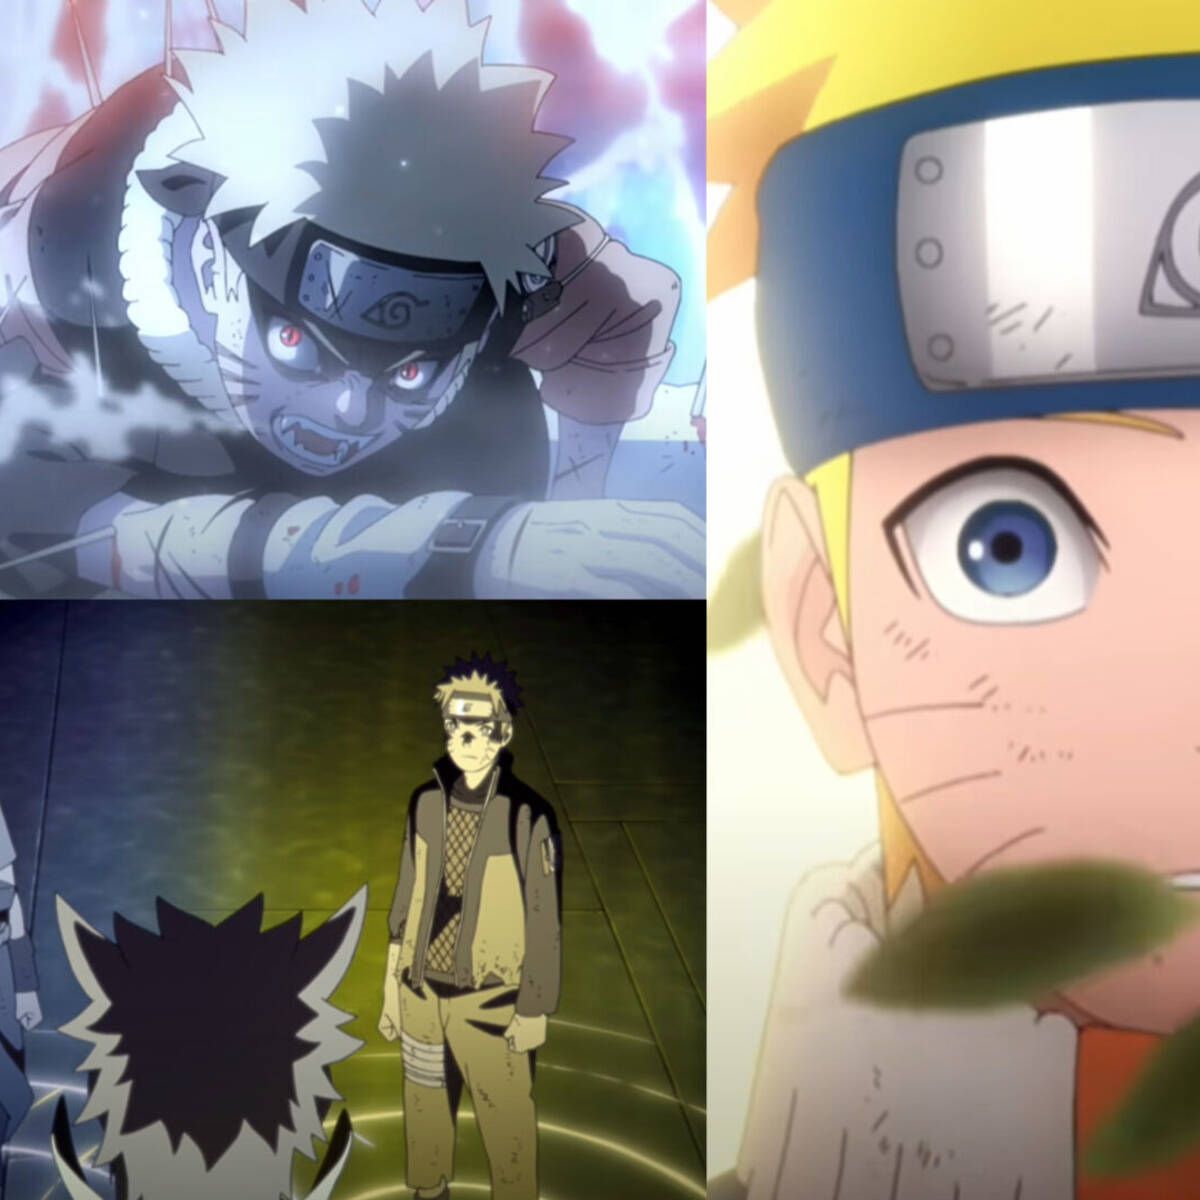 Naruto' celebra su 20 aniversario con un vídeo muy especial que nos  recuerda los momentos más emocionantes del anime